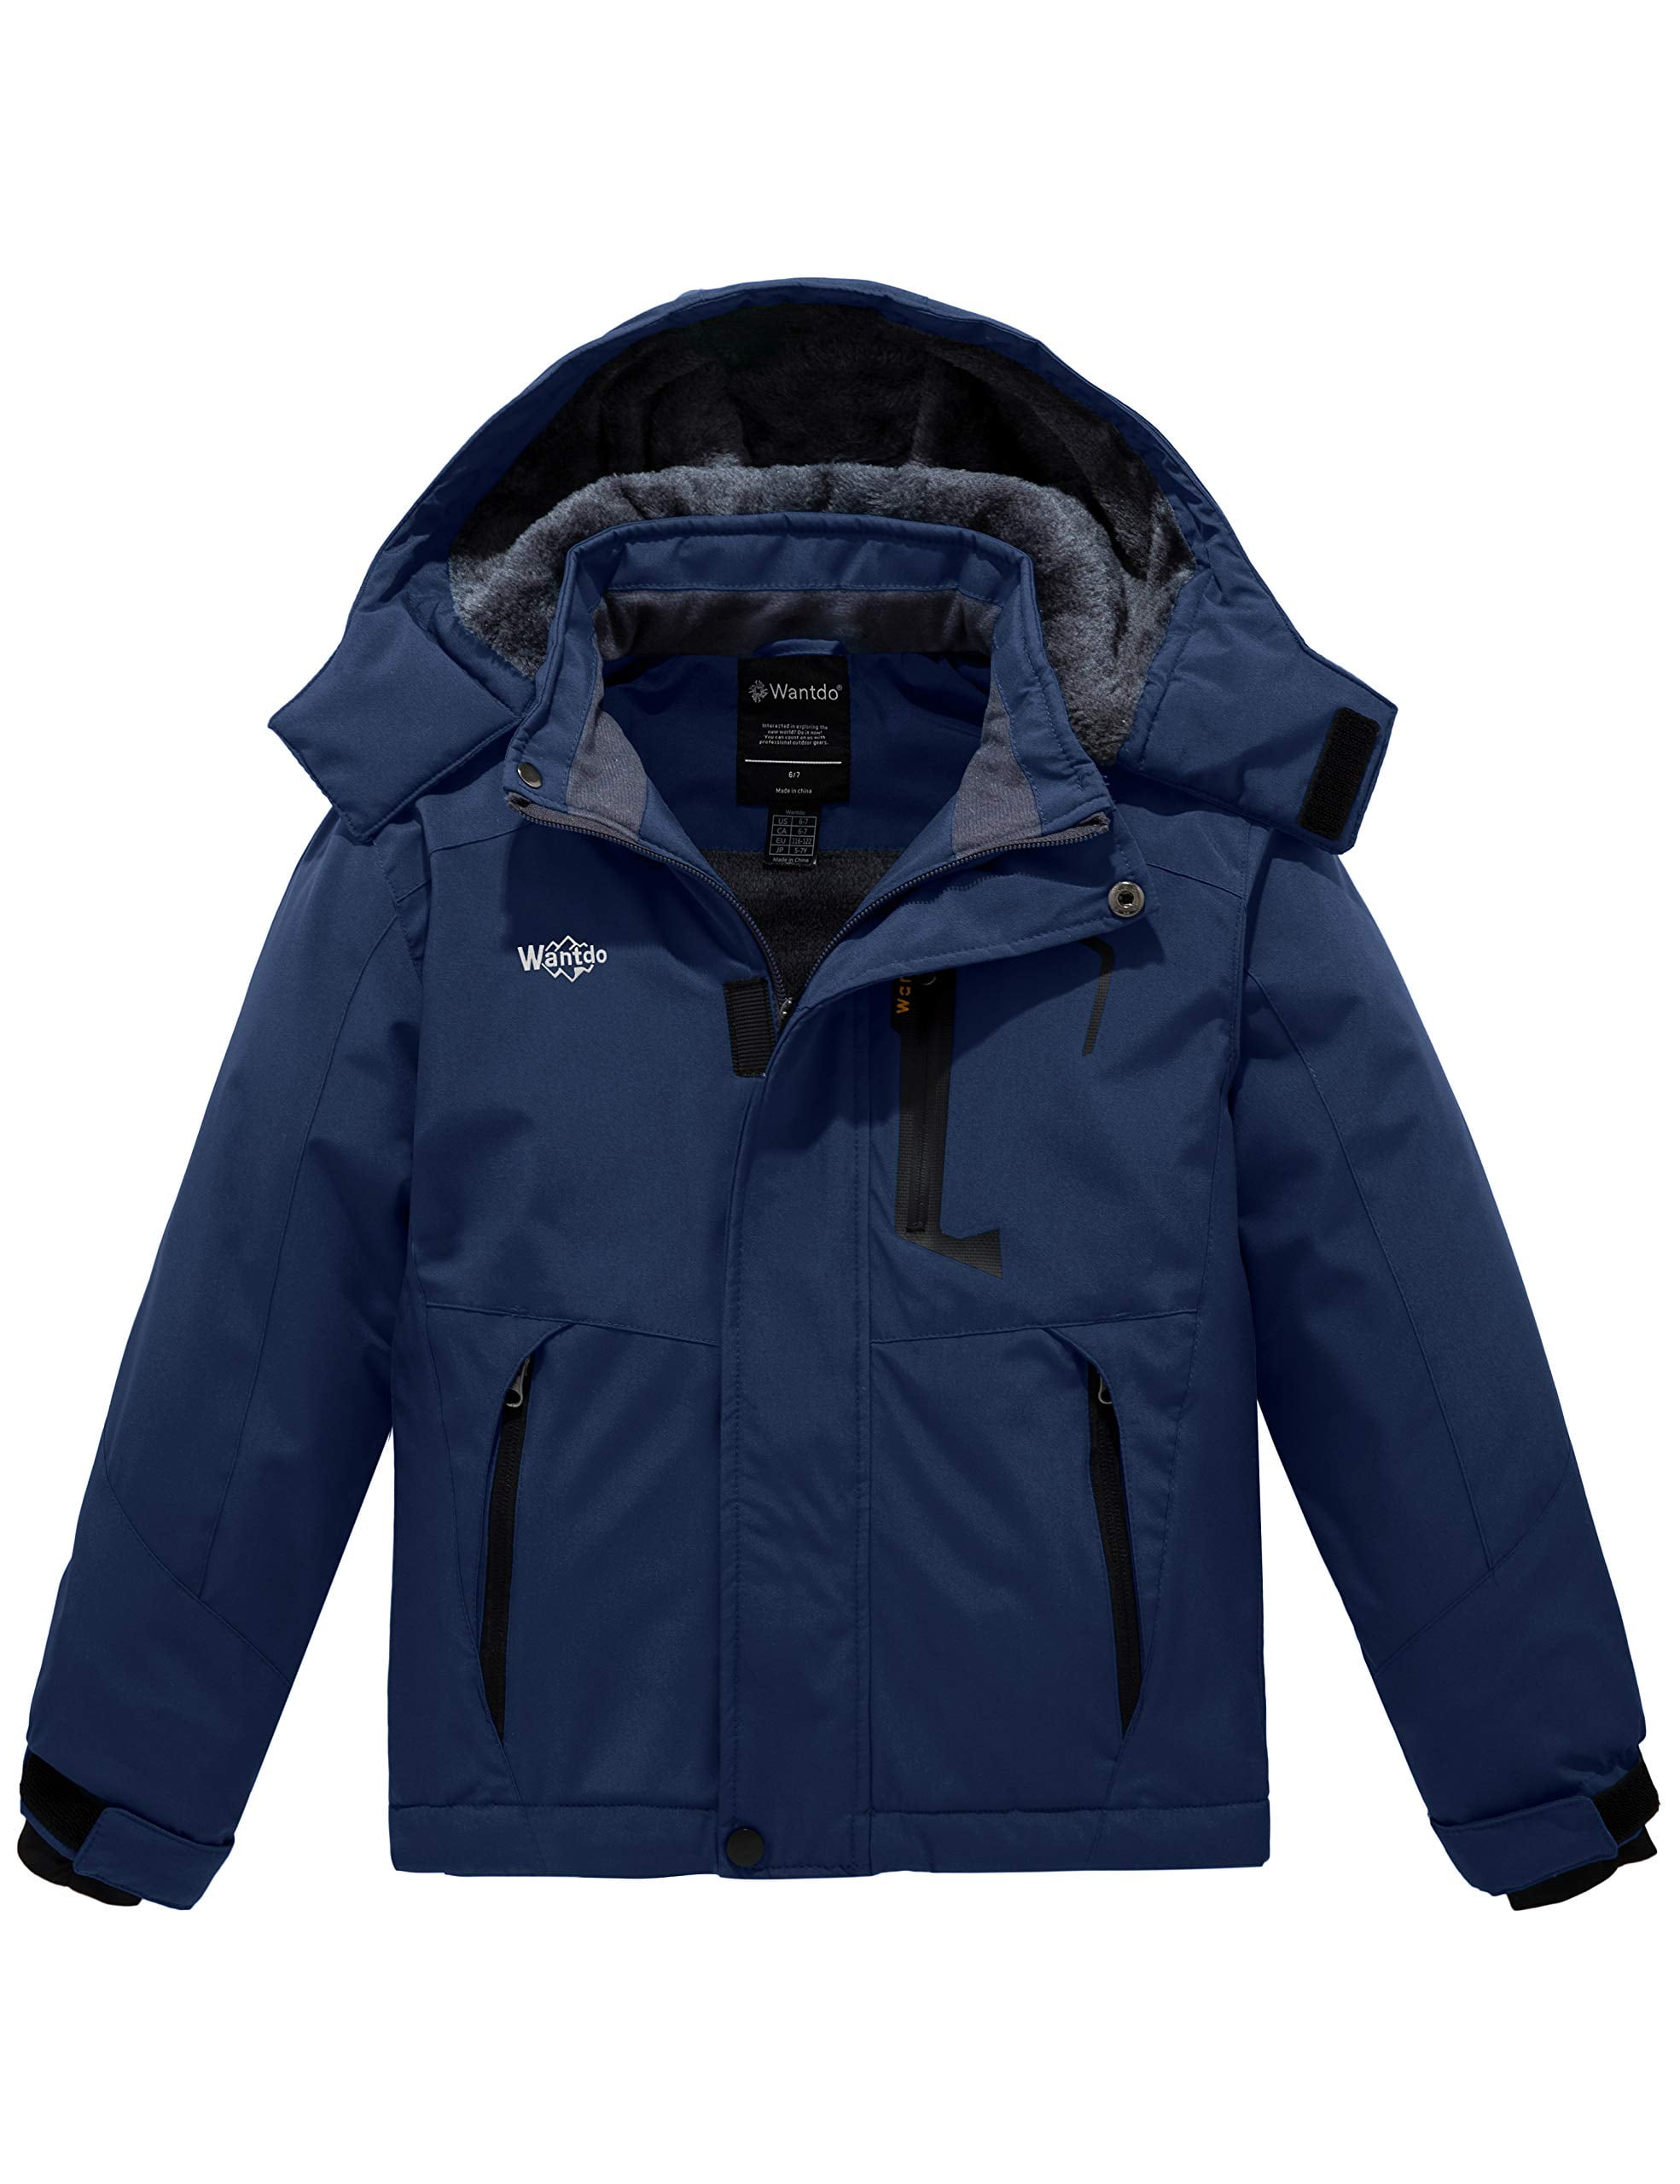 Wantdo Boy's Ski Jacket Waterproof Snow Jacket Winter Fleece Coat